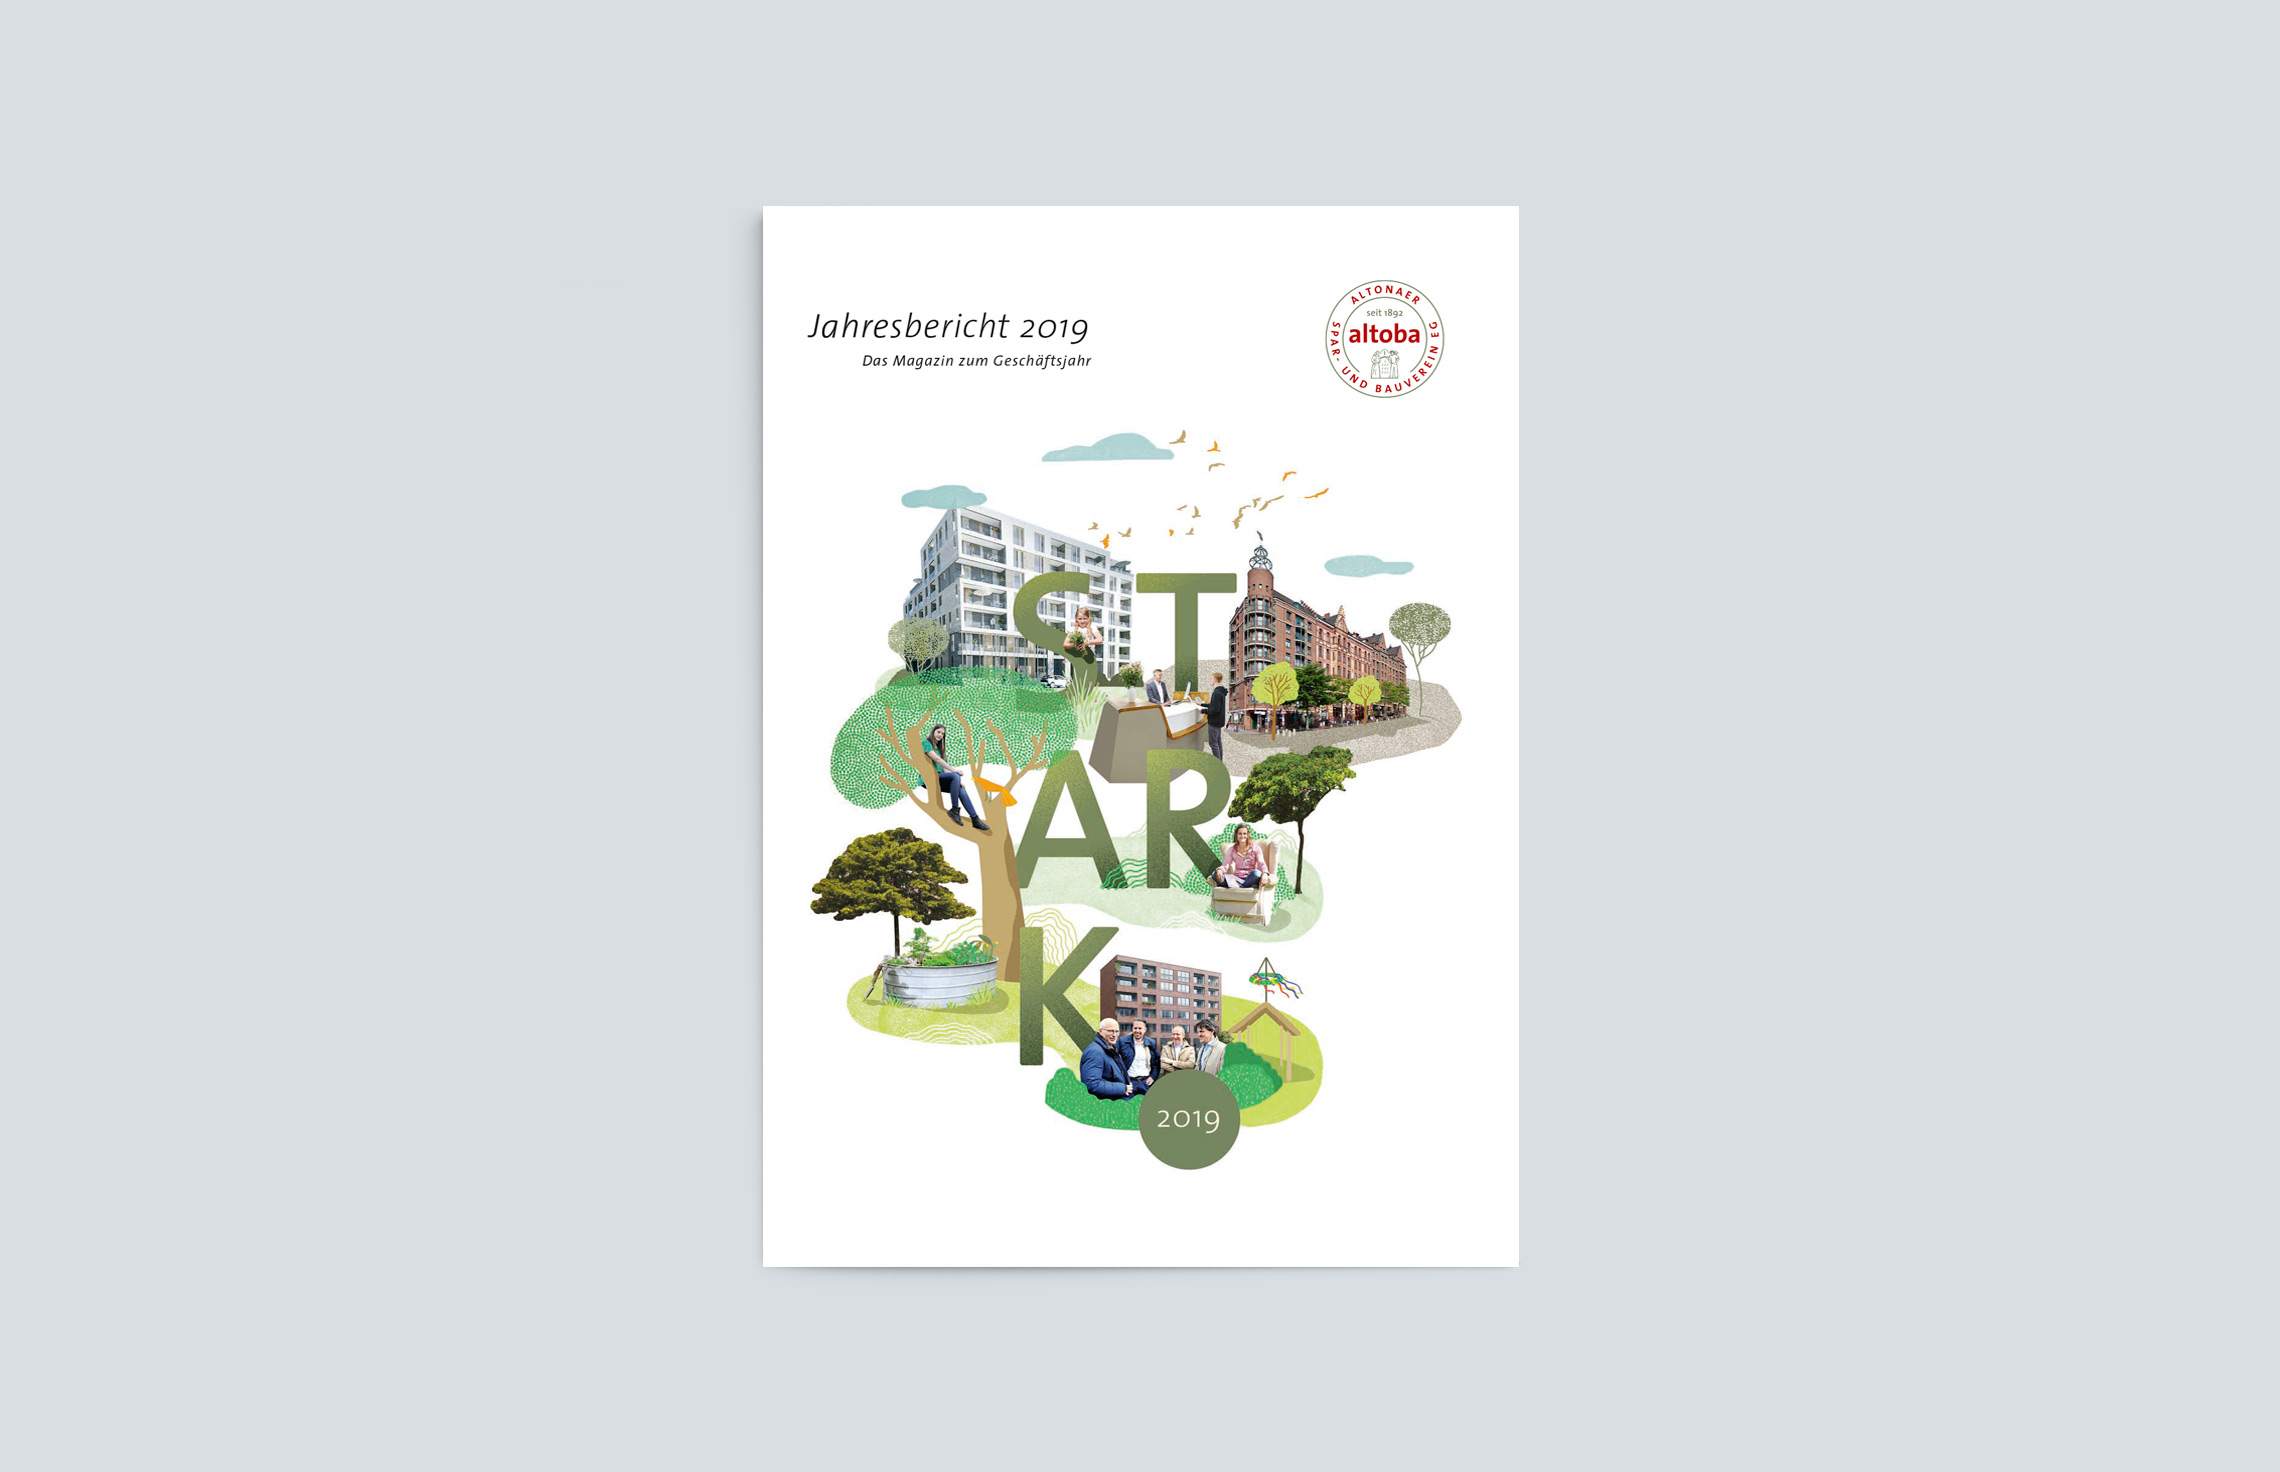 Annual Report Design, Geschäftsberichte,  Jahresbericht 2019 der altoba, Hamburg; Cover mit Titelillustration